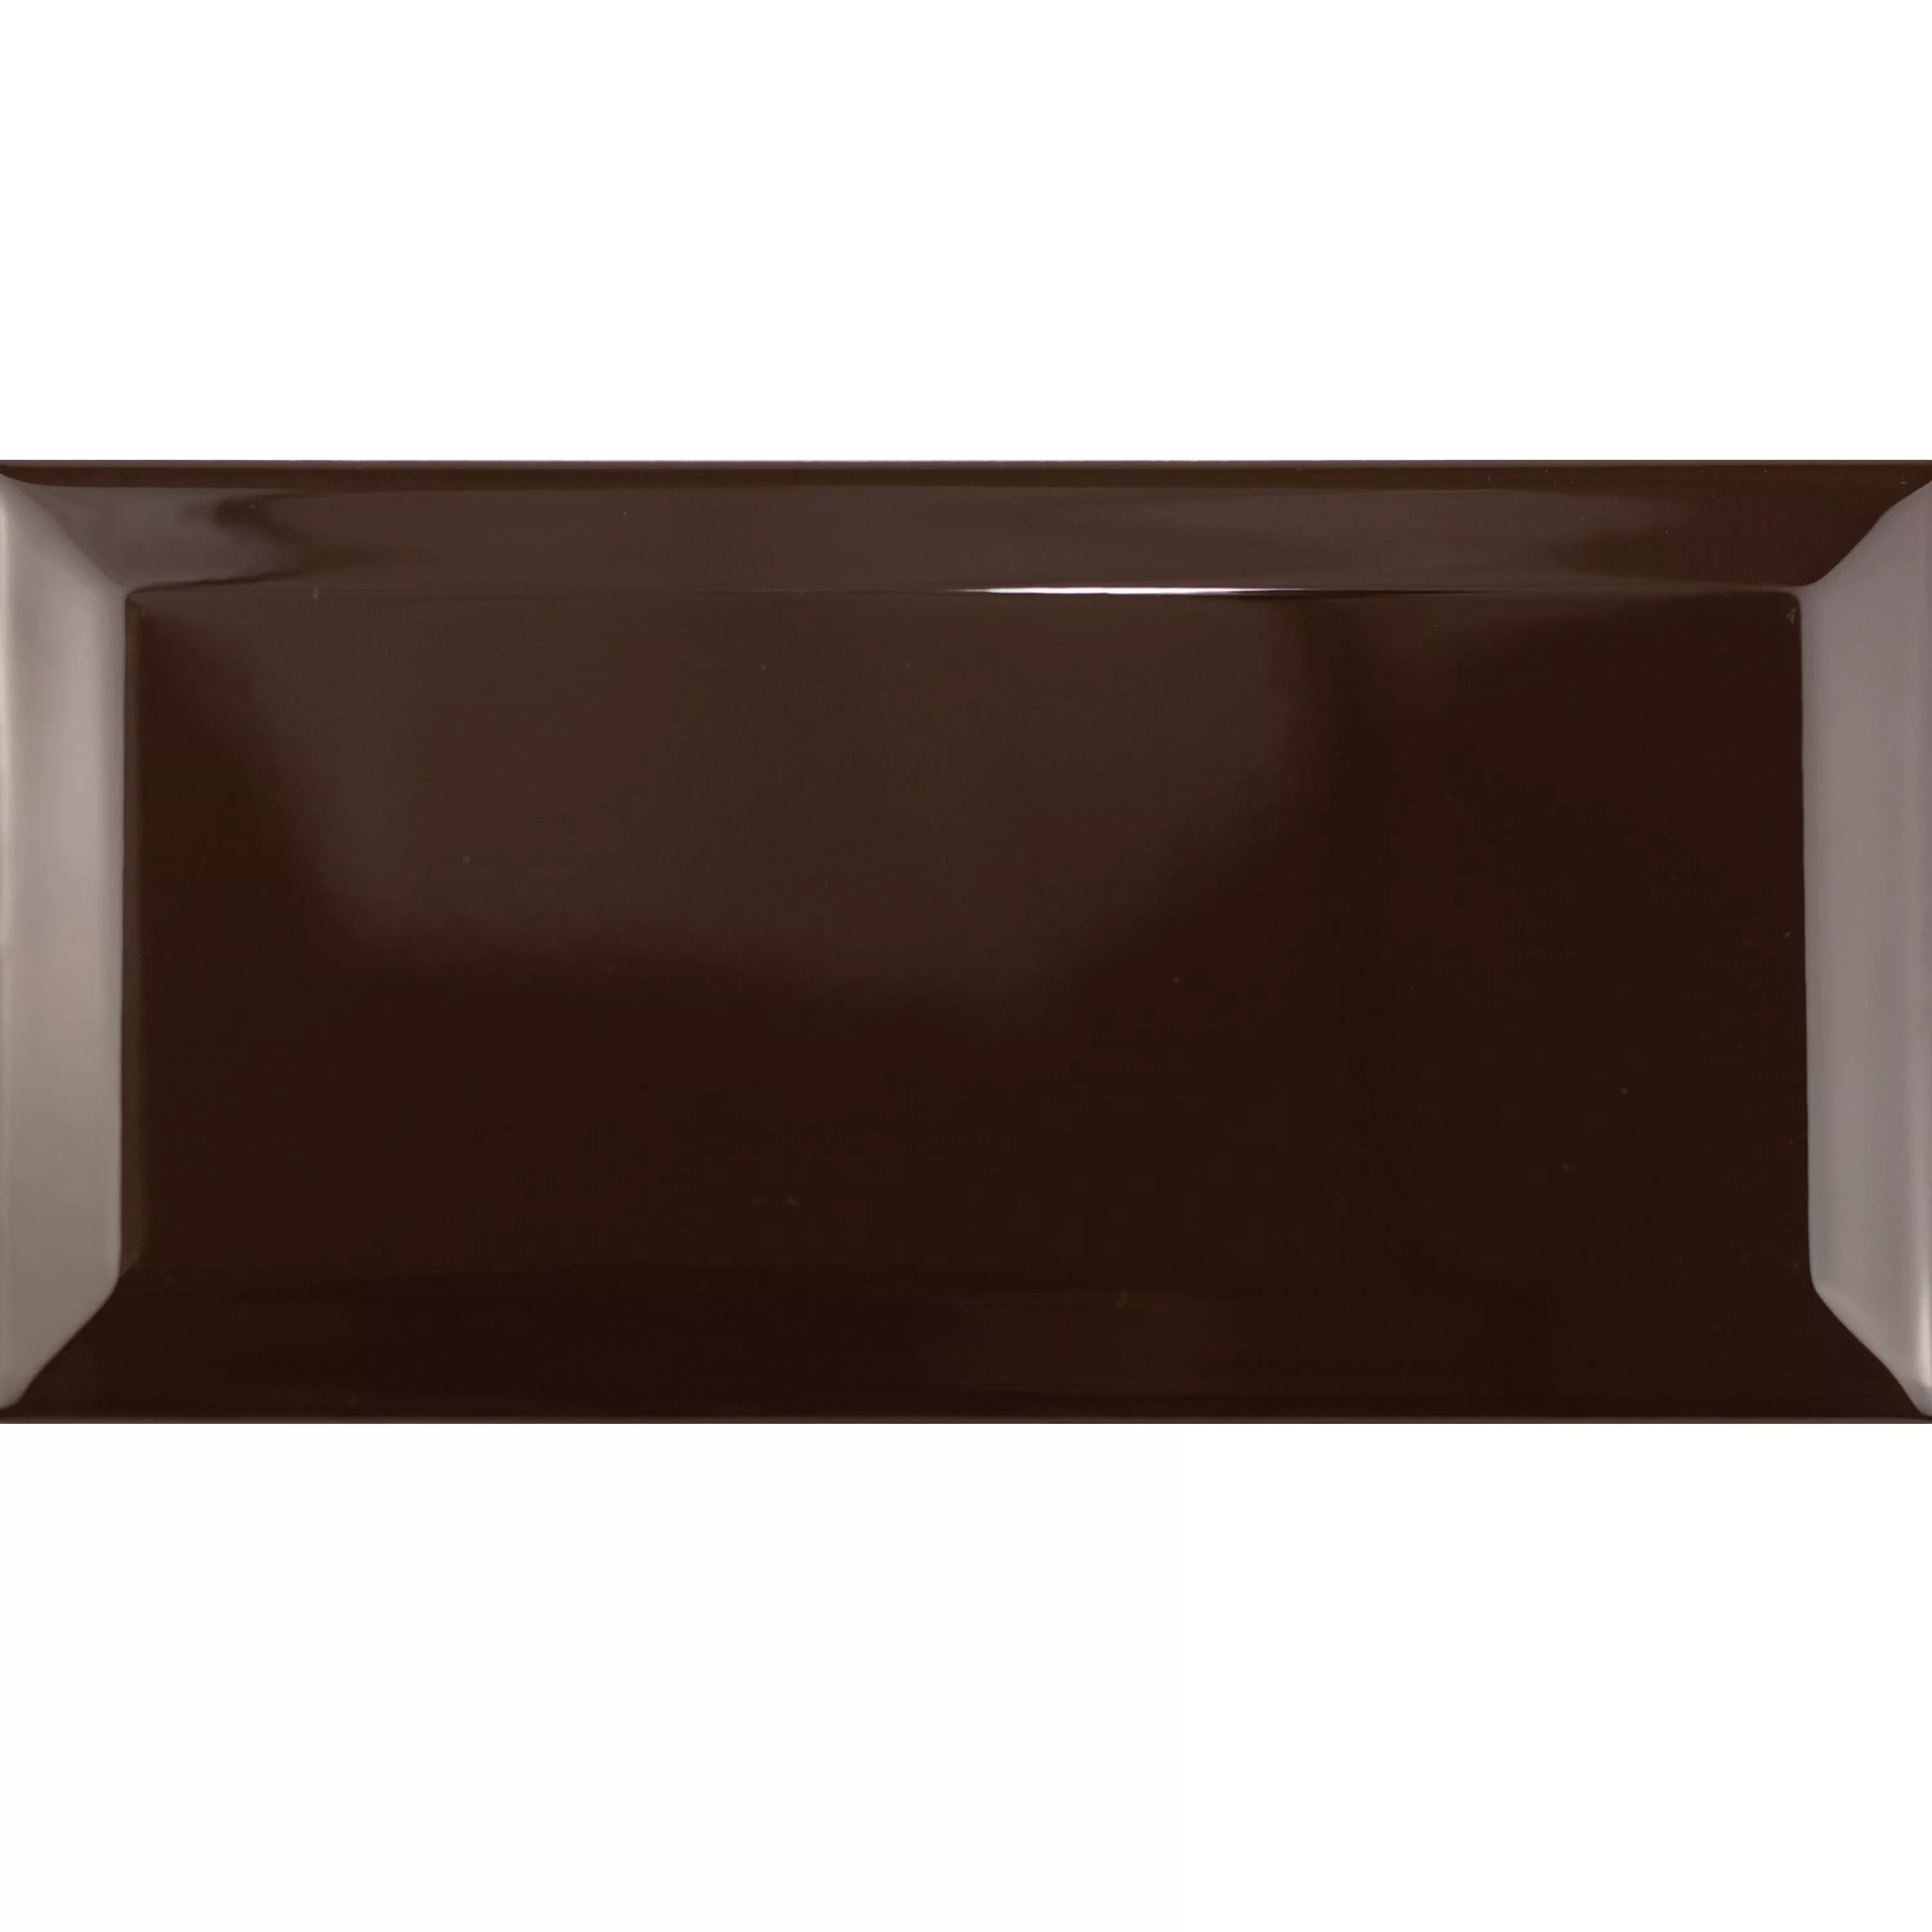 Campione Metro Rivestimenti Brussel Sfaccettatura 10x20x0,7cm Chocolate